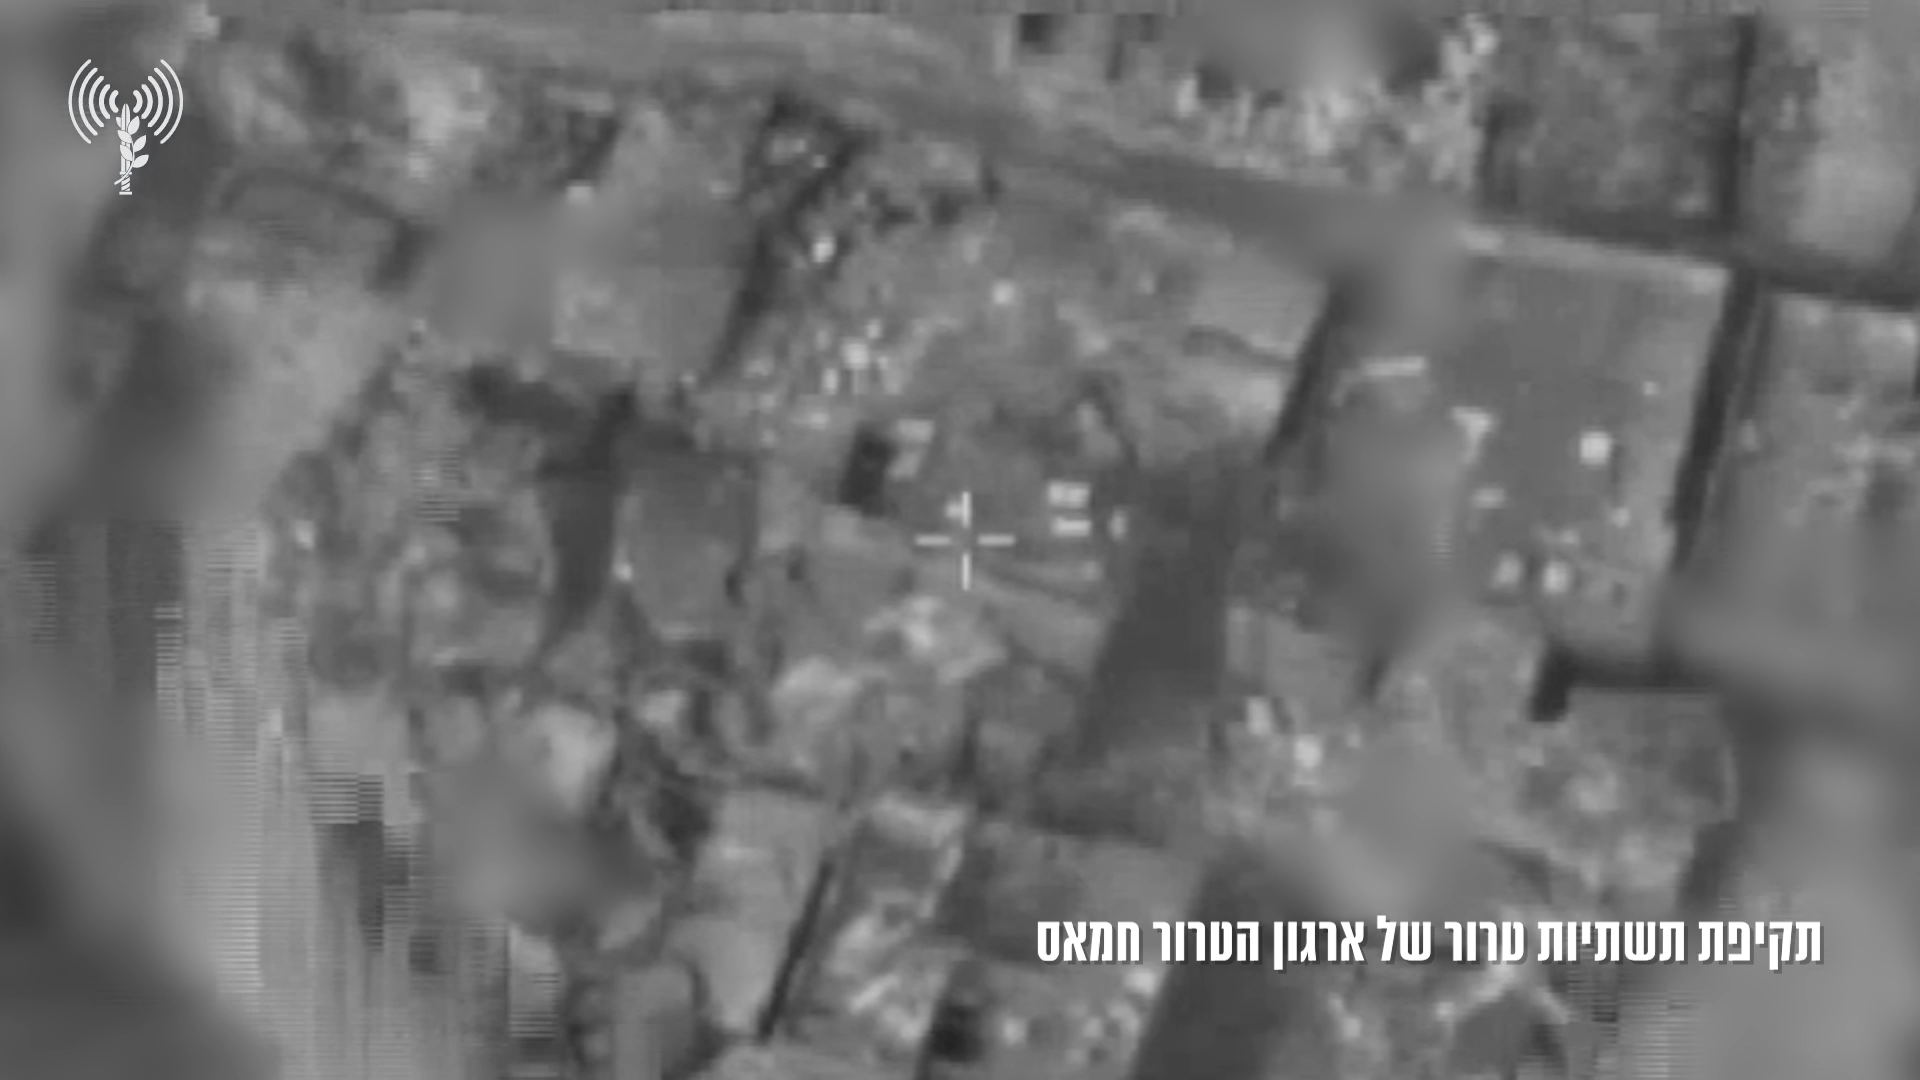 الجيش الإسرائيلي يكشف عن مناطق عملياته العسكرية في قطاع غزة حاليا (فيديو)